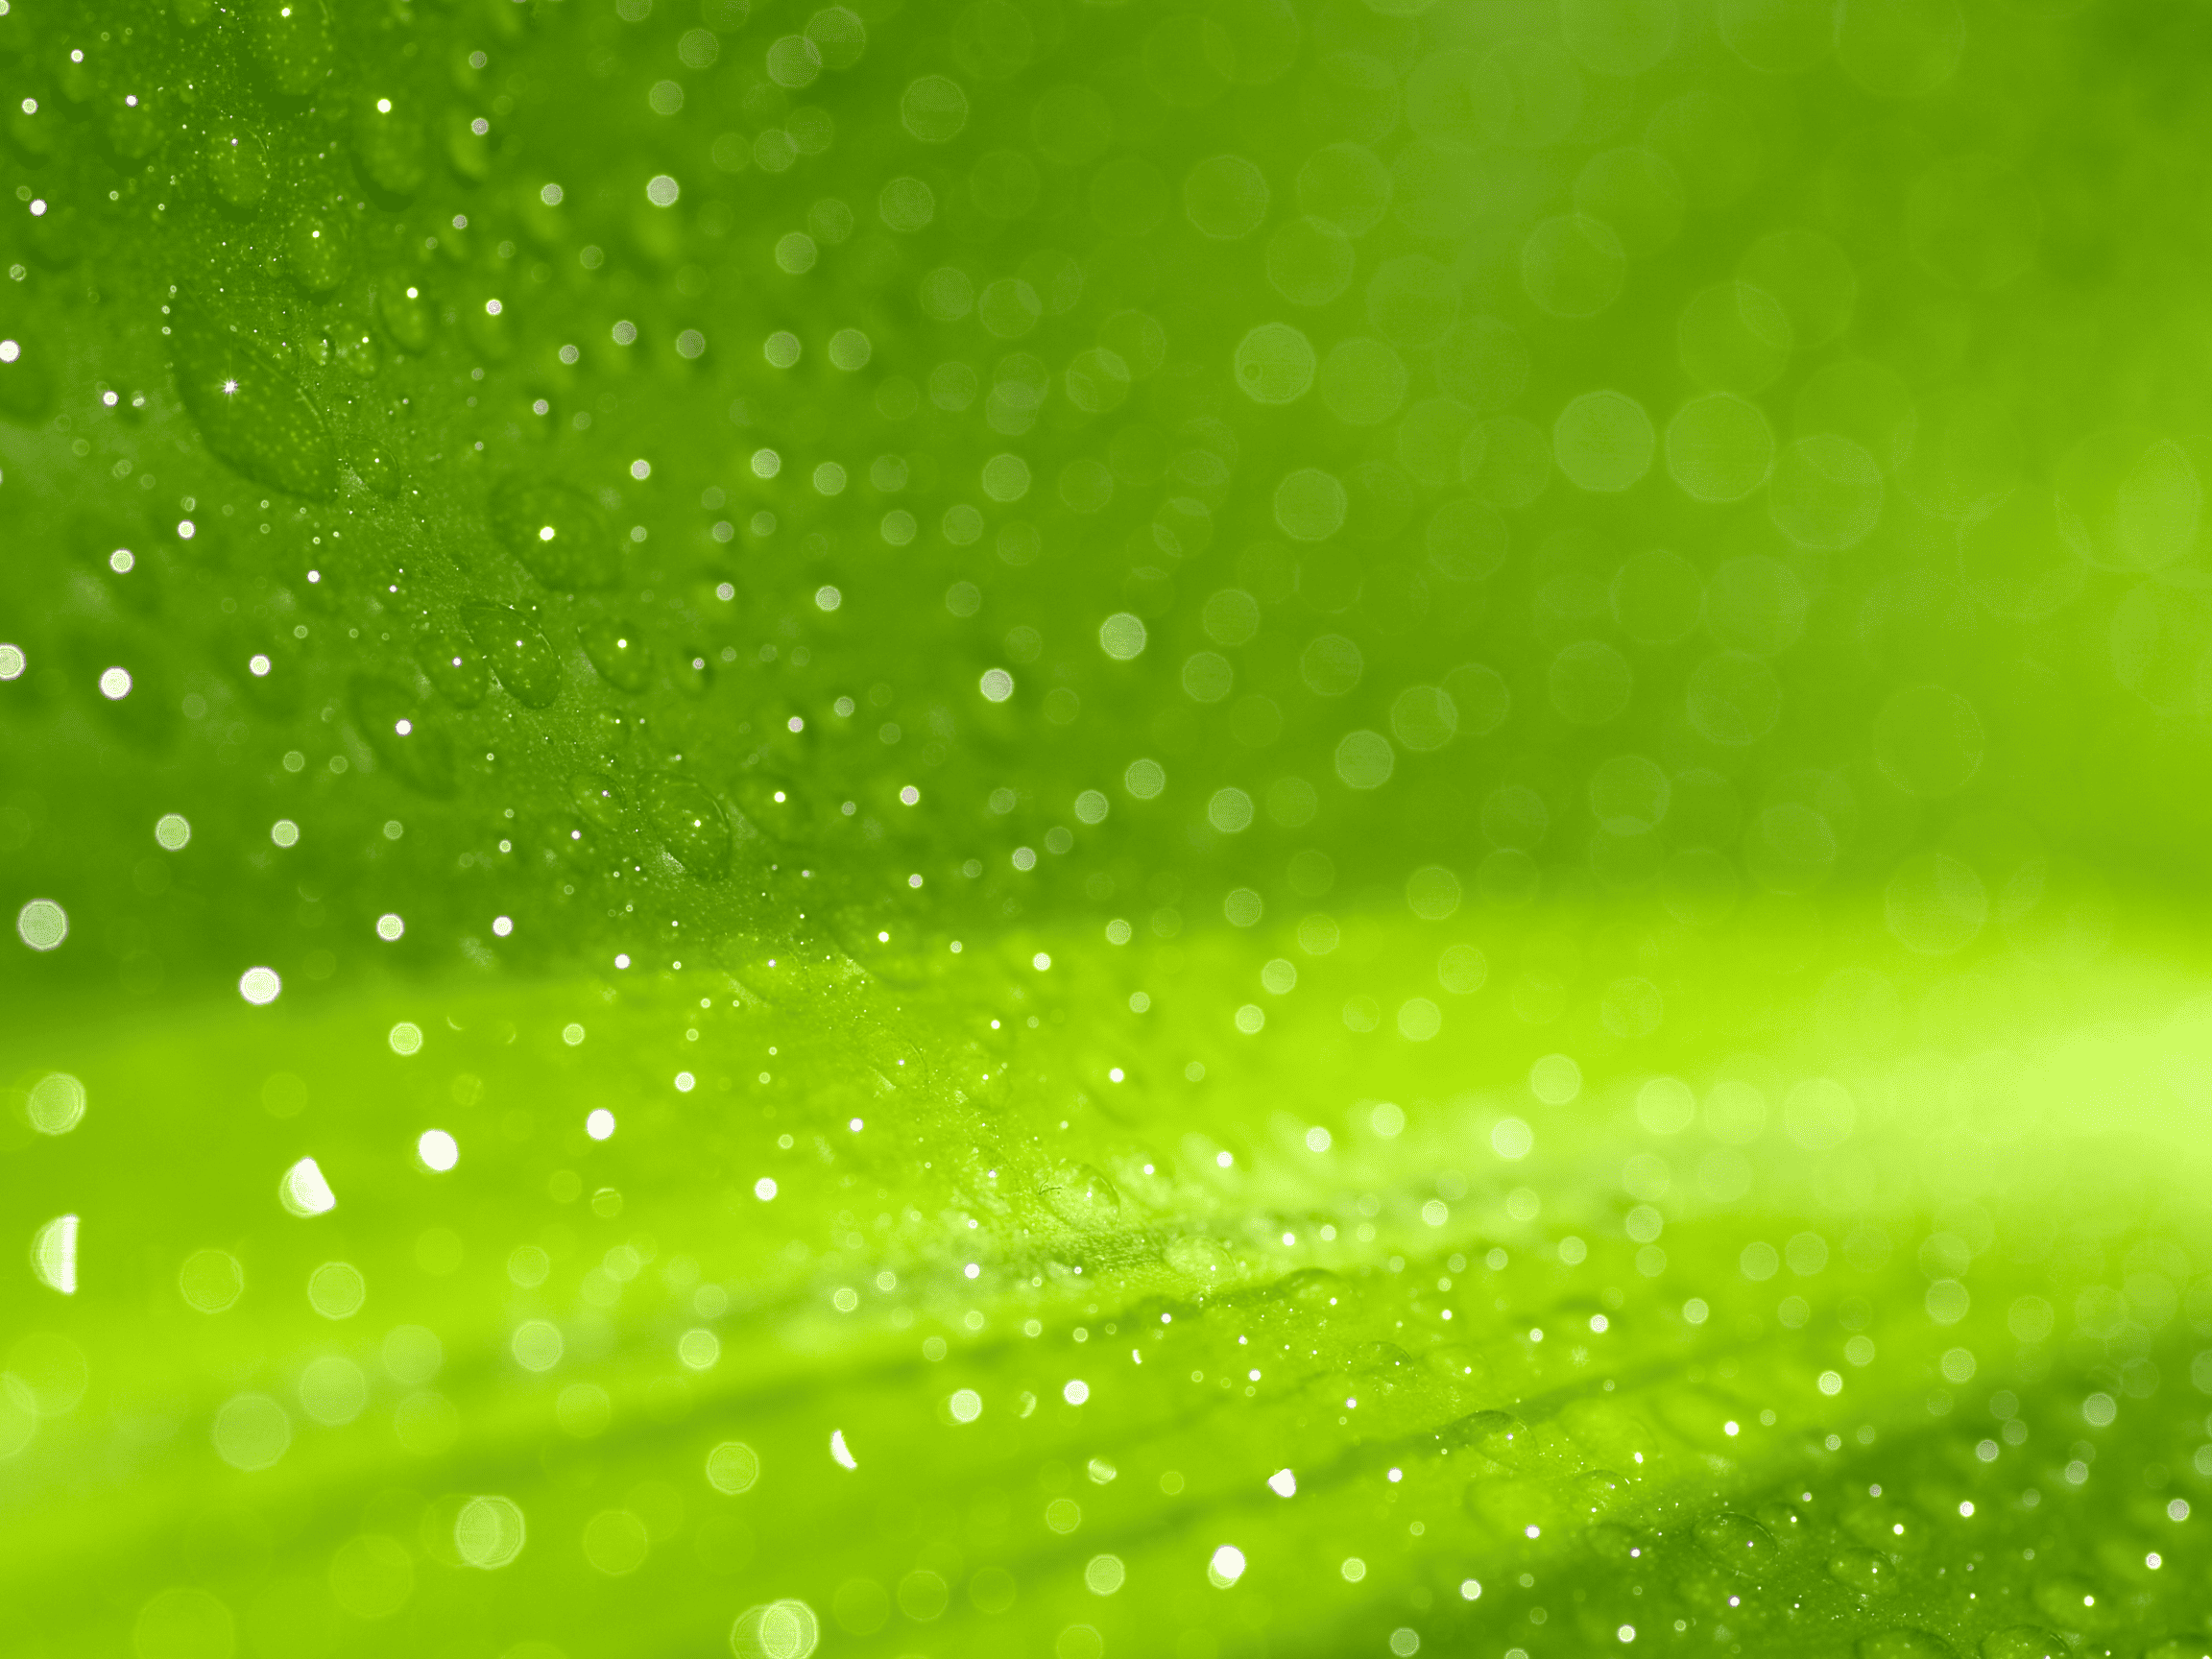 Morning dew on a green leaf.